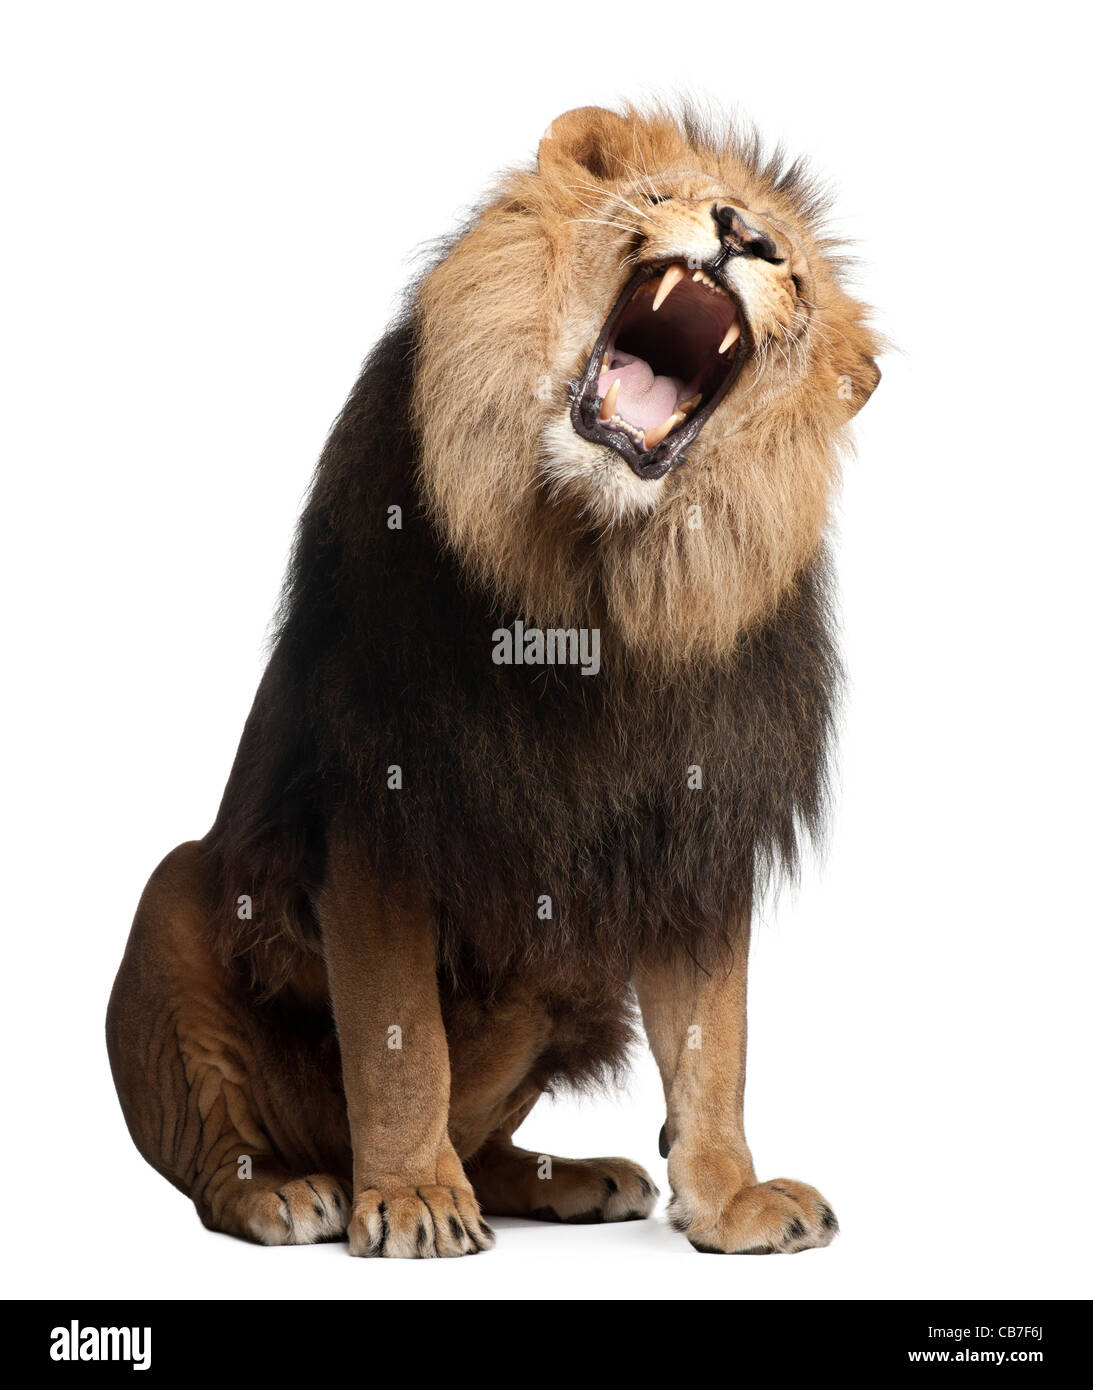 Lion, 8 ans, Panthera leo, rugissant devant un fond blanc Banque D'Images